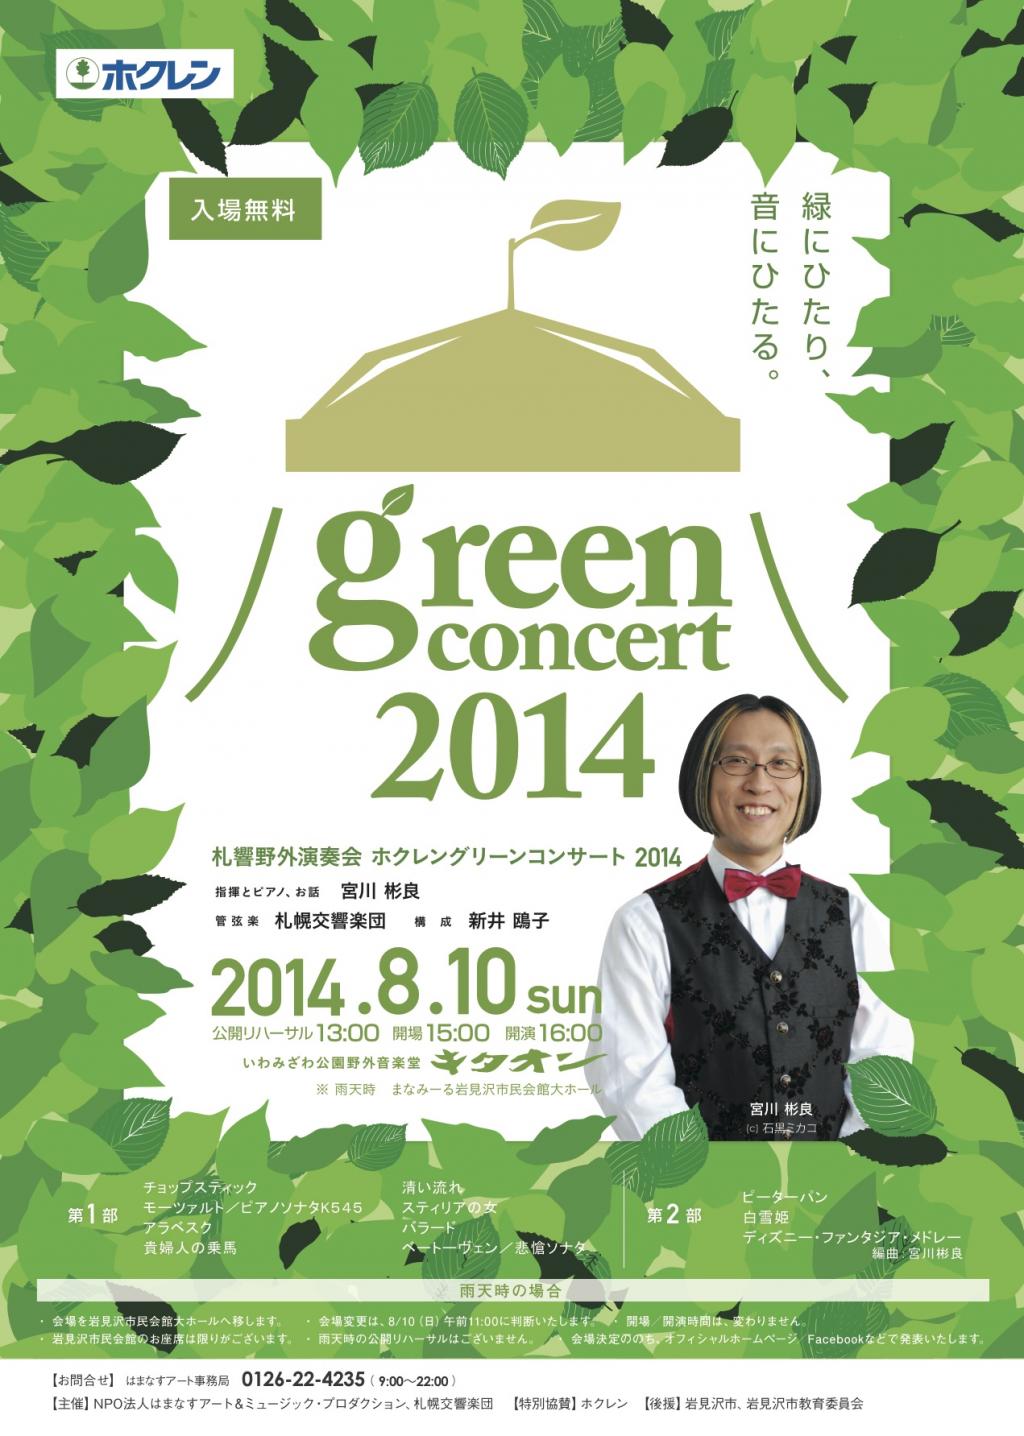 ホクレングリーンコンサート 2014